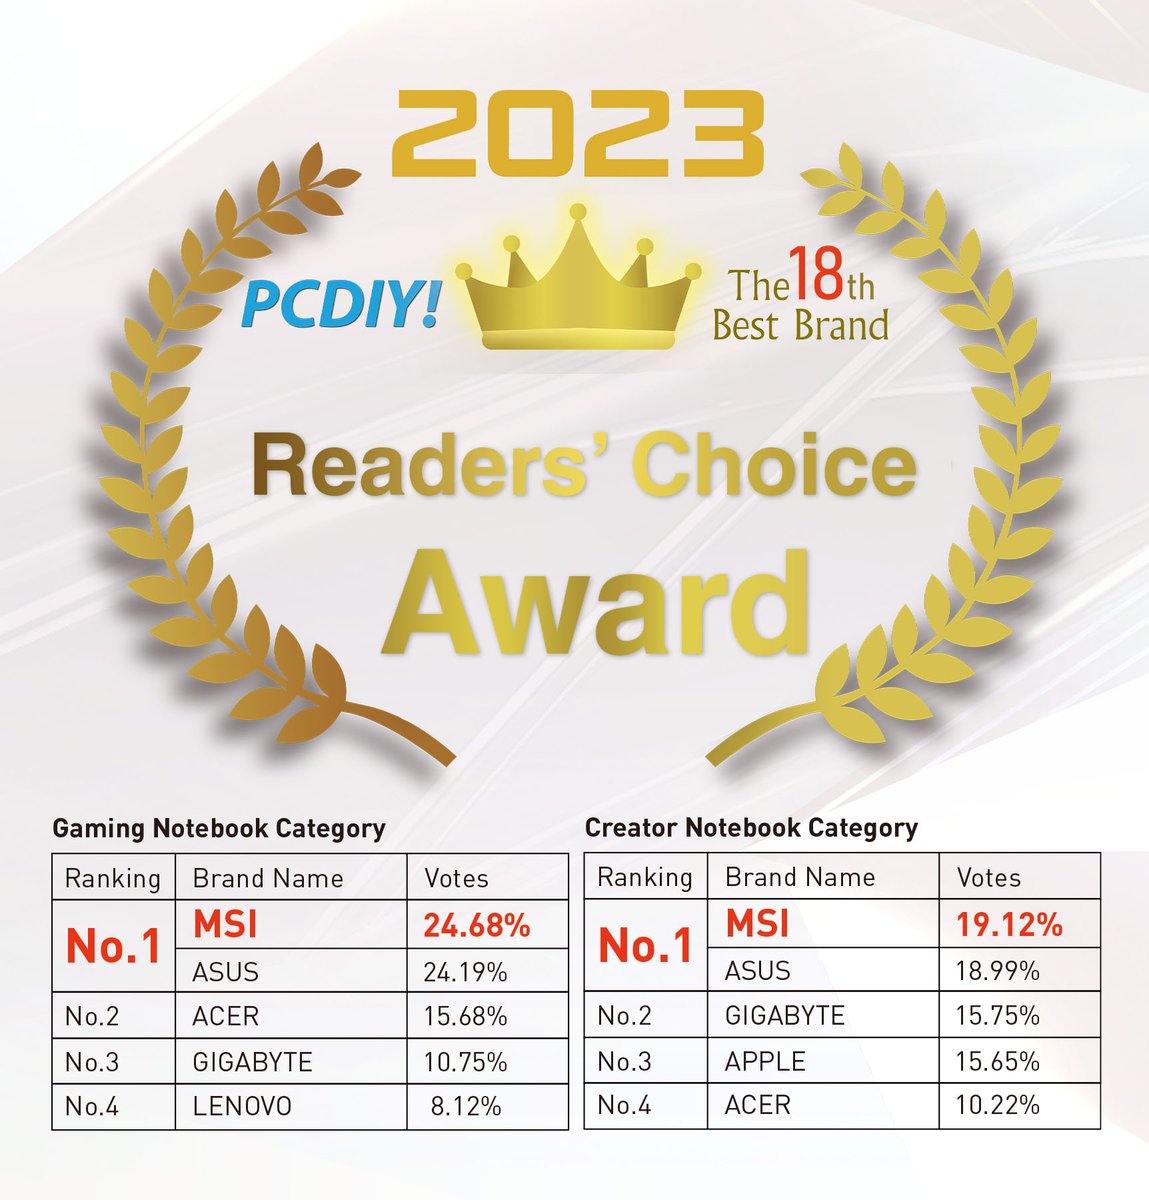 🏆يشرفنا أن نعلن عن فوز MSI بالمركز الأول في عام 2023 PCDIY! جائزة أفضل علامة تجارية رقم 18 - جائزة اختيار القراء في فئتي حواسيب الألعاب المحمولة  وحواسيب منشئي المحتوى المحمولة، وهو فوزنا الثاني على التوالي في فئة حواسيب الألعاب المحمولة.

#PCDIY #Gaminglaptop #MSI #Award